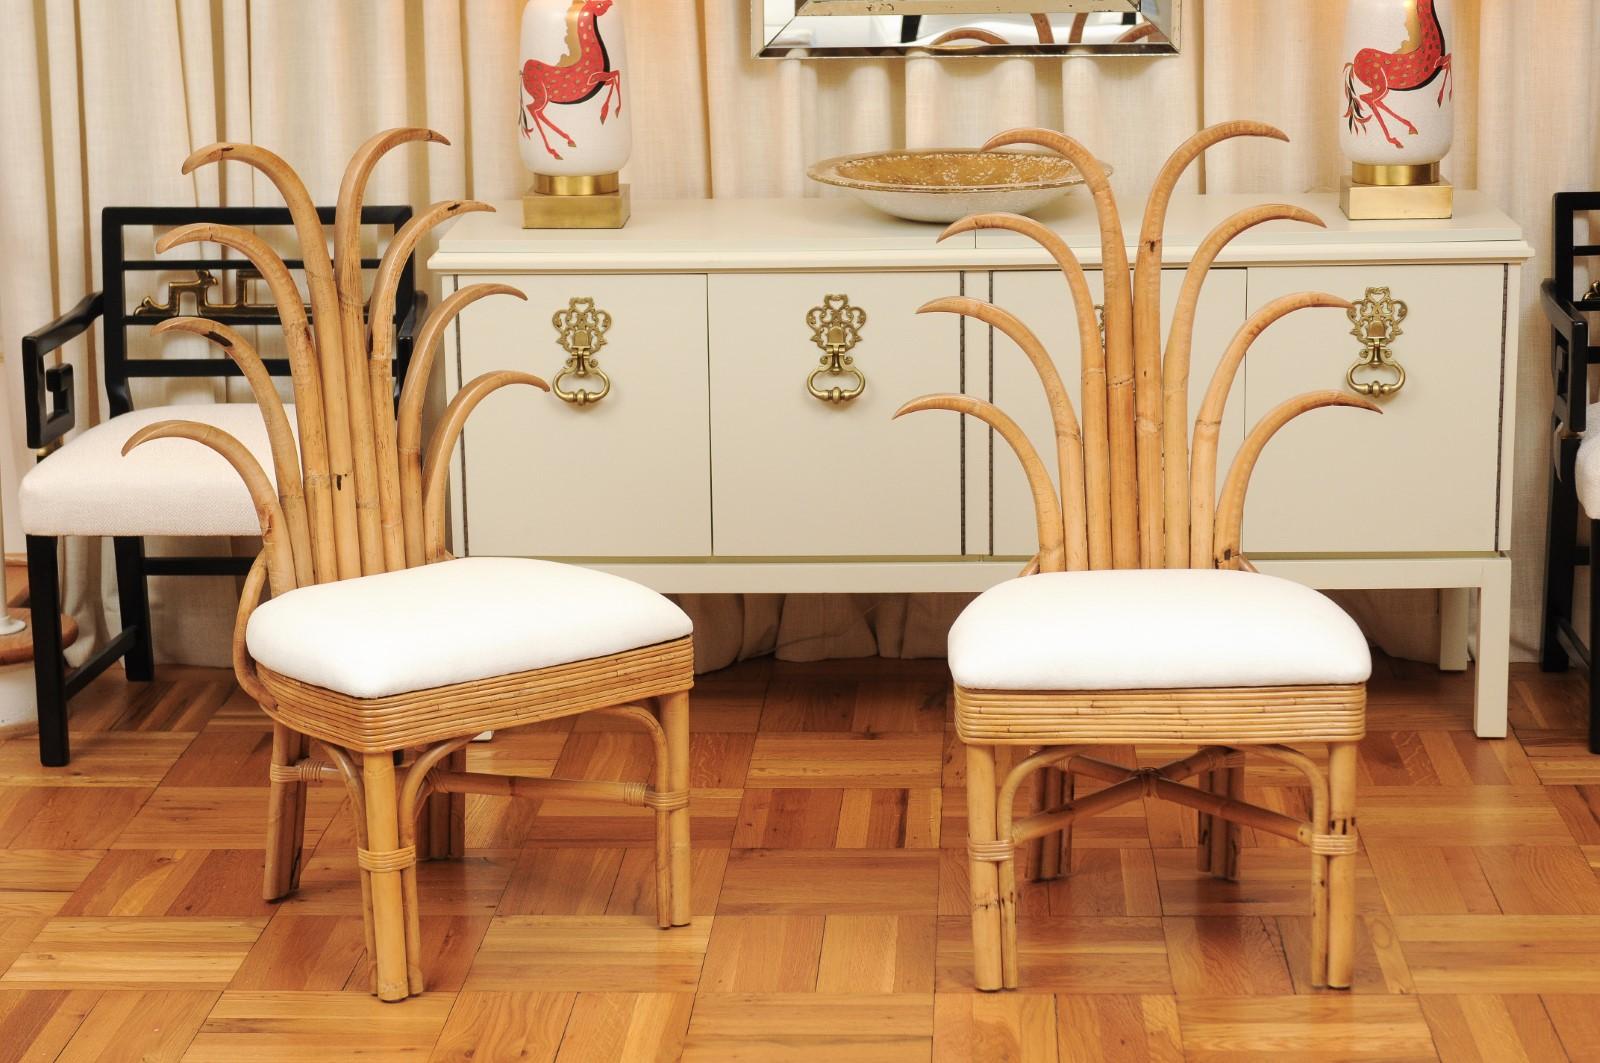 Ce magnifique ensemble de chaises de salle à manger est expédié tel que photographié et décrit professionnellement dans l'annonce : méticuleusement restauré et complètement prêt à l'installation. Cet ensemble incroyable est unique sur le marché